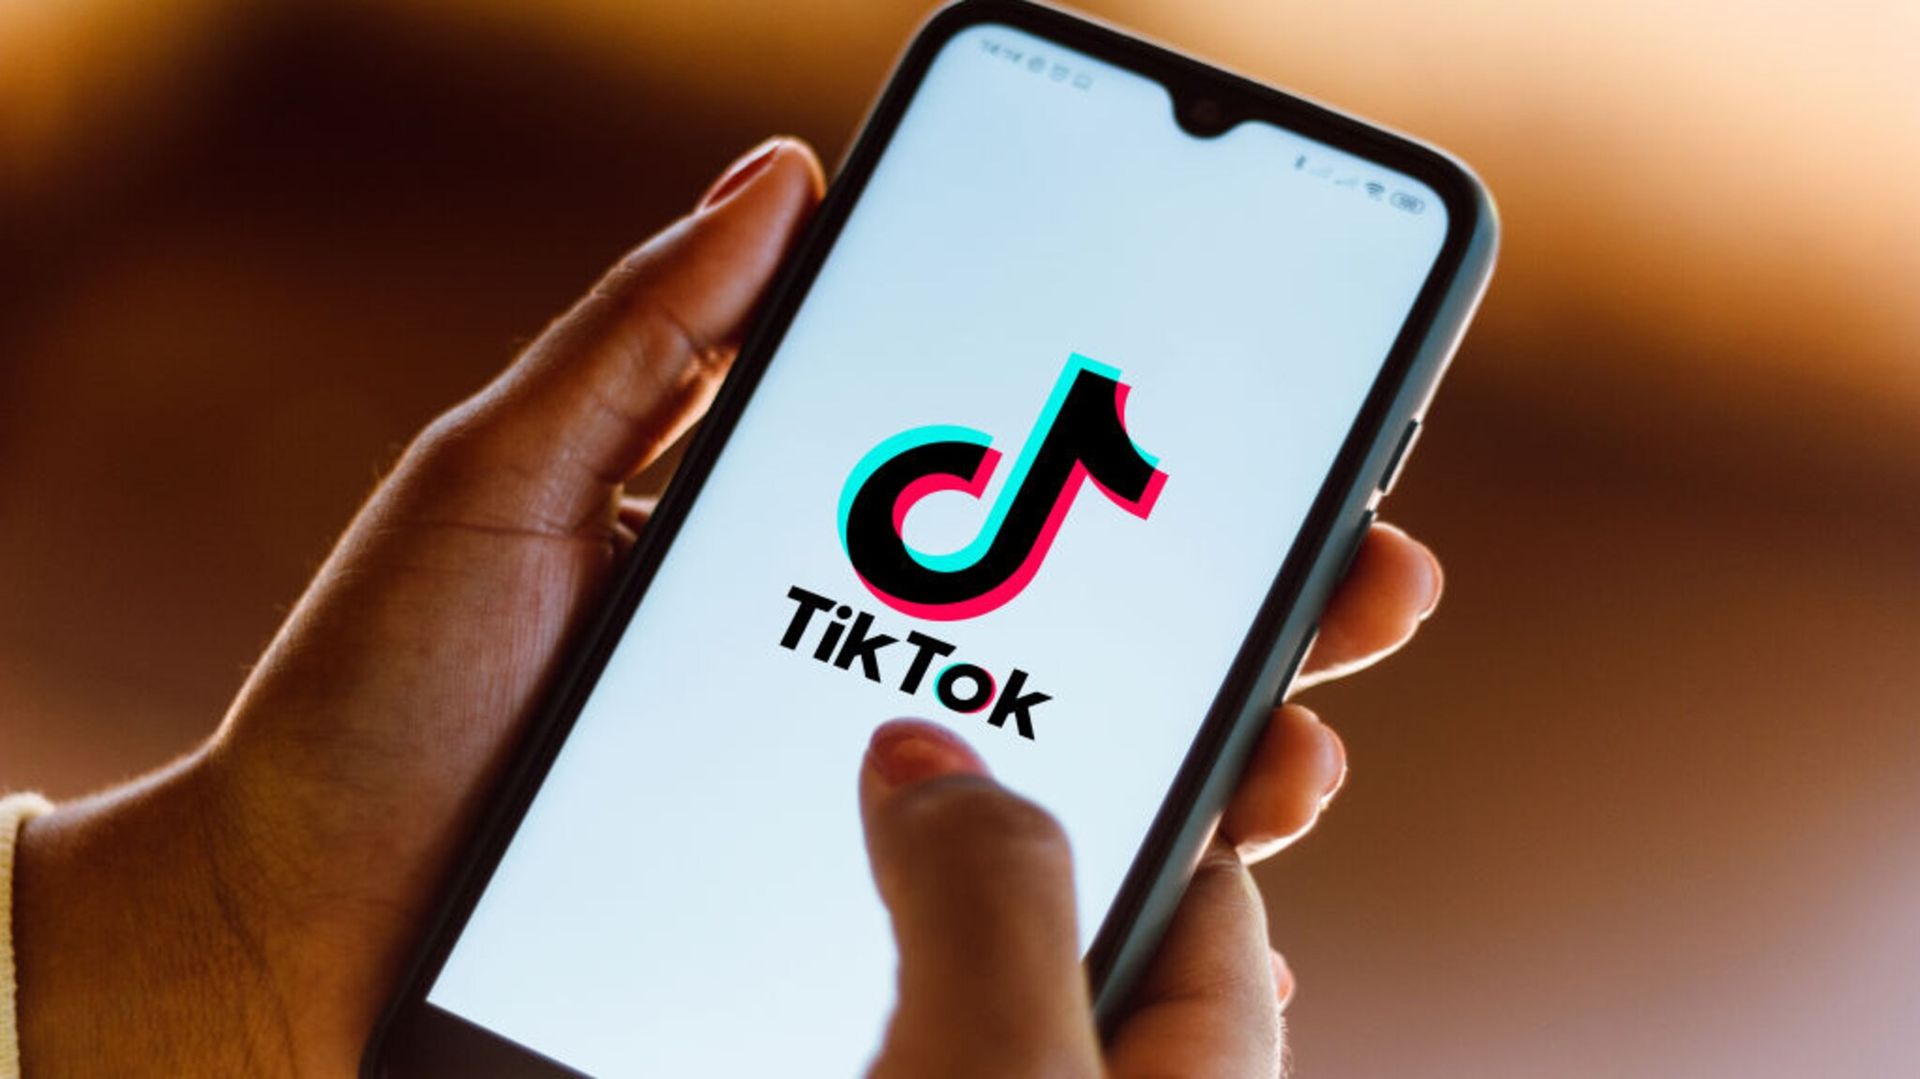 How to get TikTok blue tick verification?